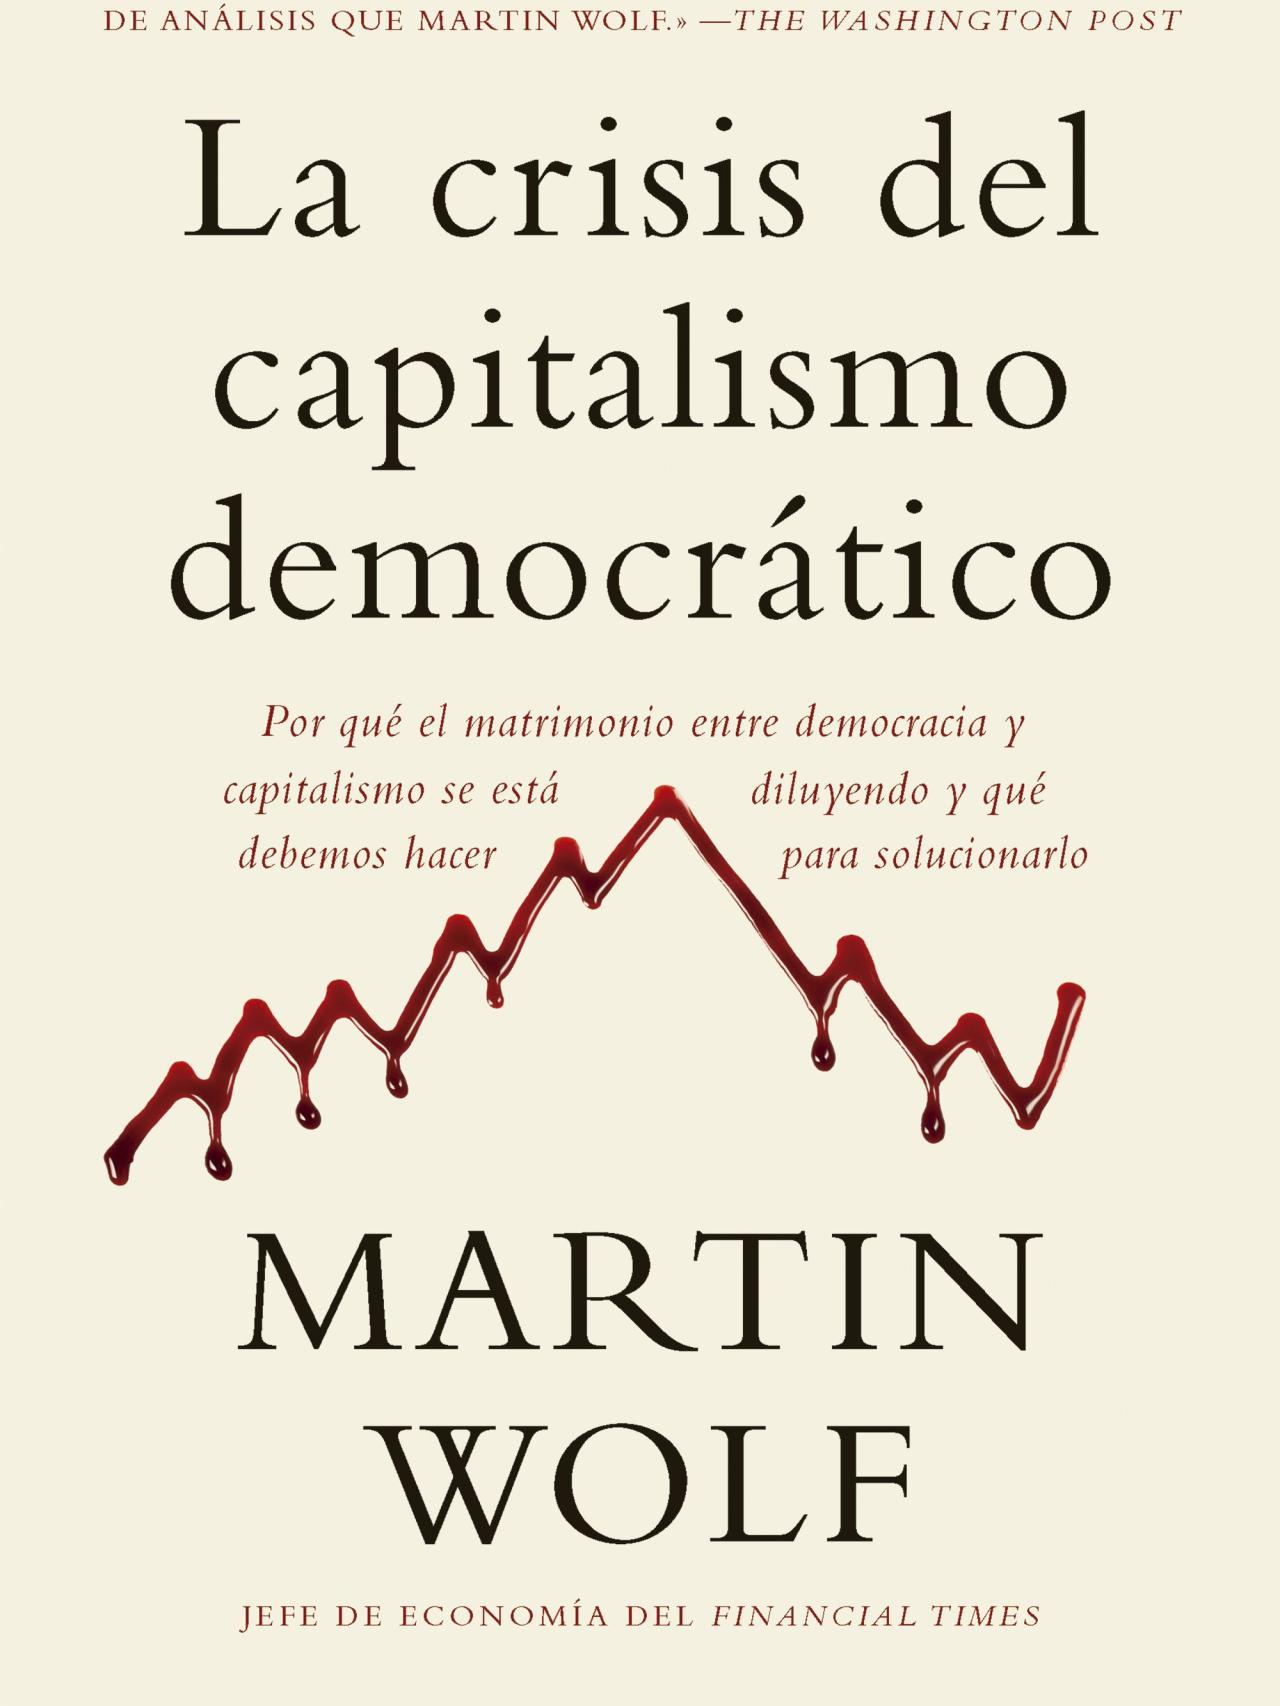 La crisis del capitalismo democrático, de Martin Wolf.